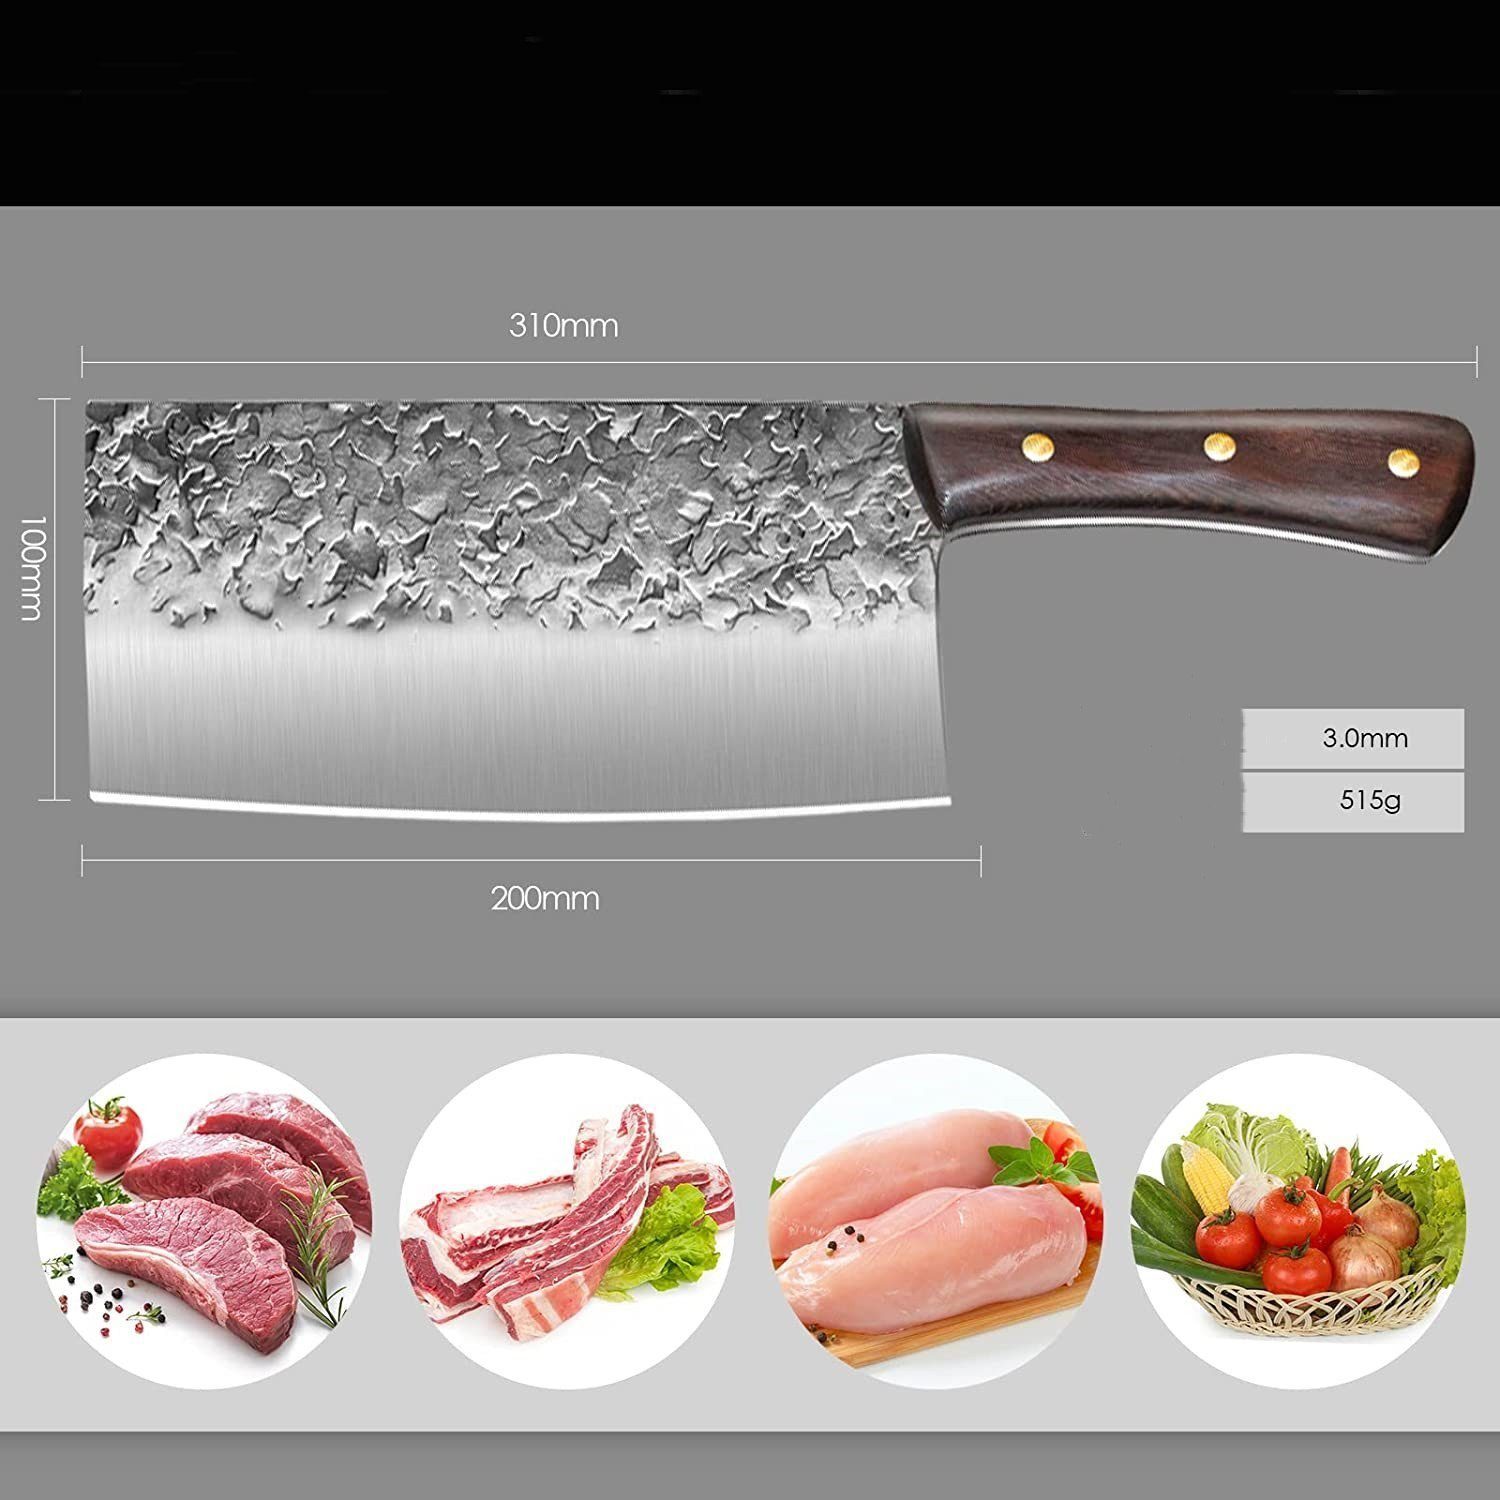 Chinesisches Handgeschmiedetes Küchenmesser Hackmesser KingLux Metzgermesser